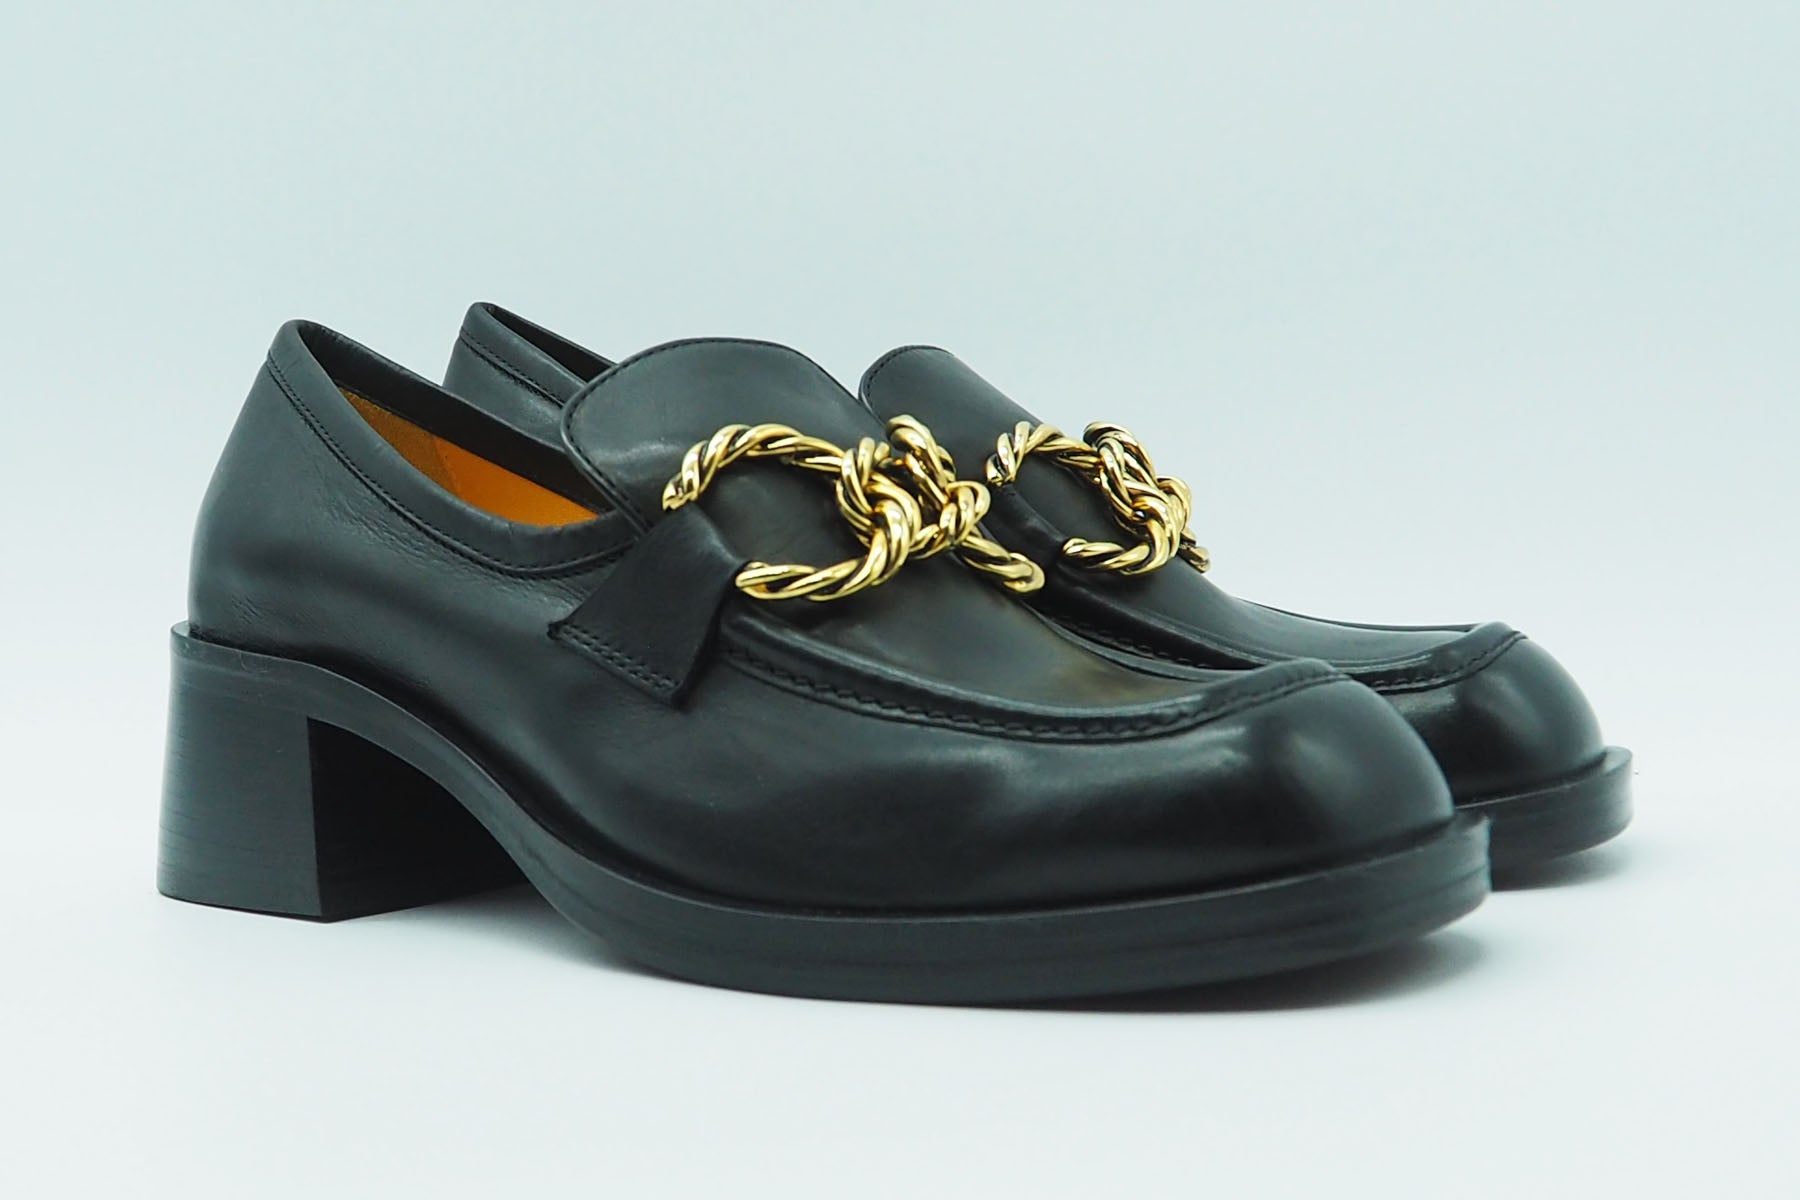 Damen Loafer aus Leder in Schwarz - Absatz 4cm Damen Loafers & Schnürer Mara Bini